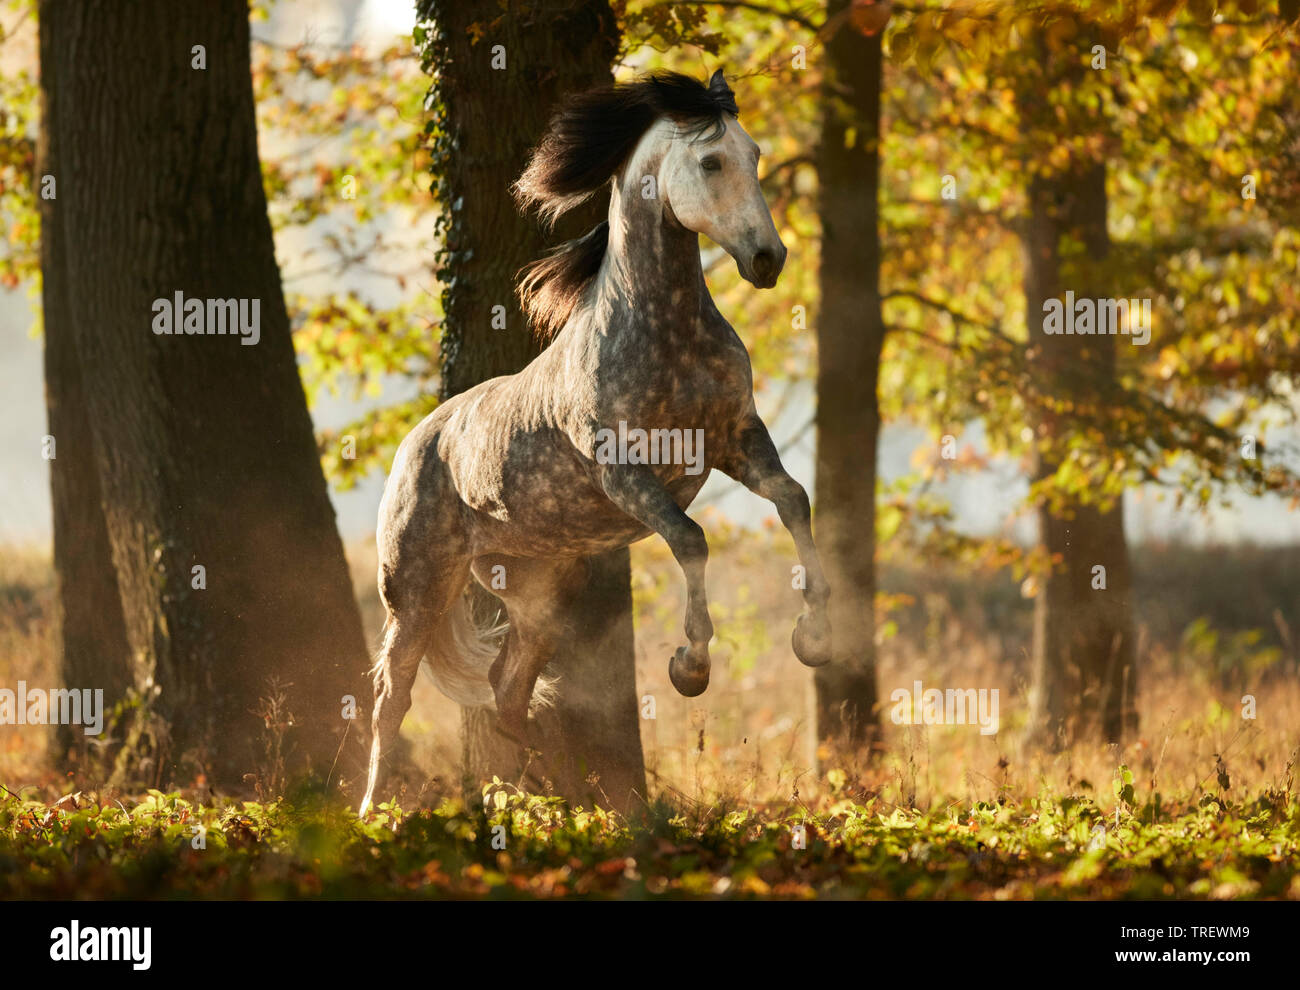 Cheval Espagnol pur, andalou. Gris pommelé des profils montrant dans une forêt en automne. Allemagne Banque D'Images